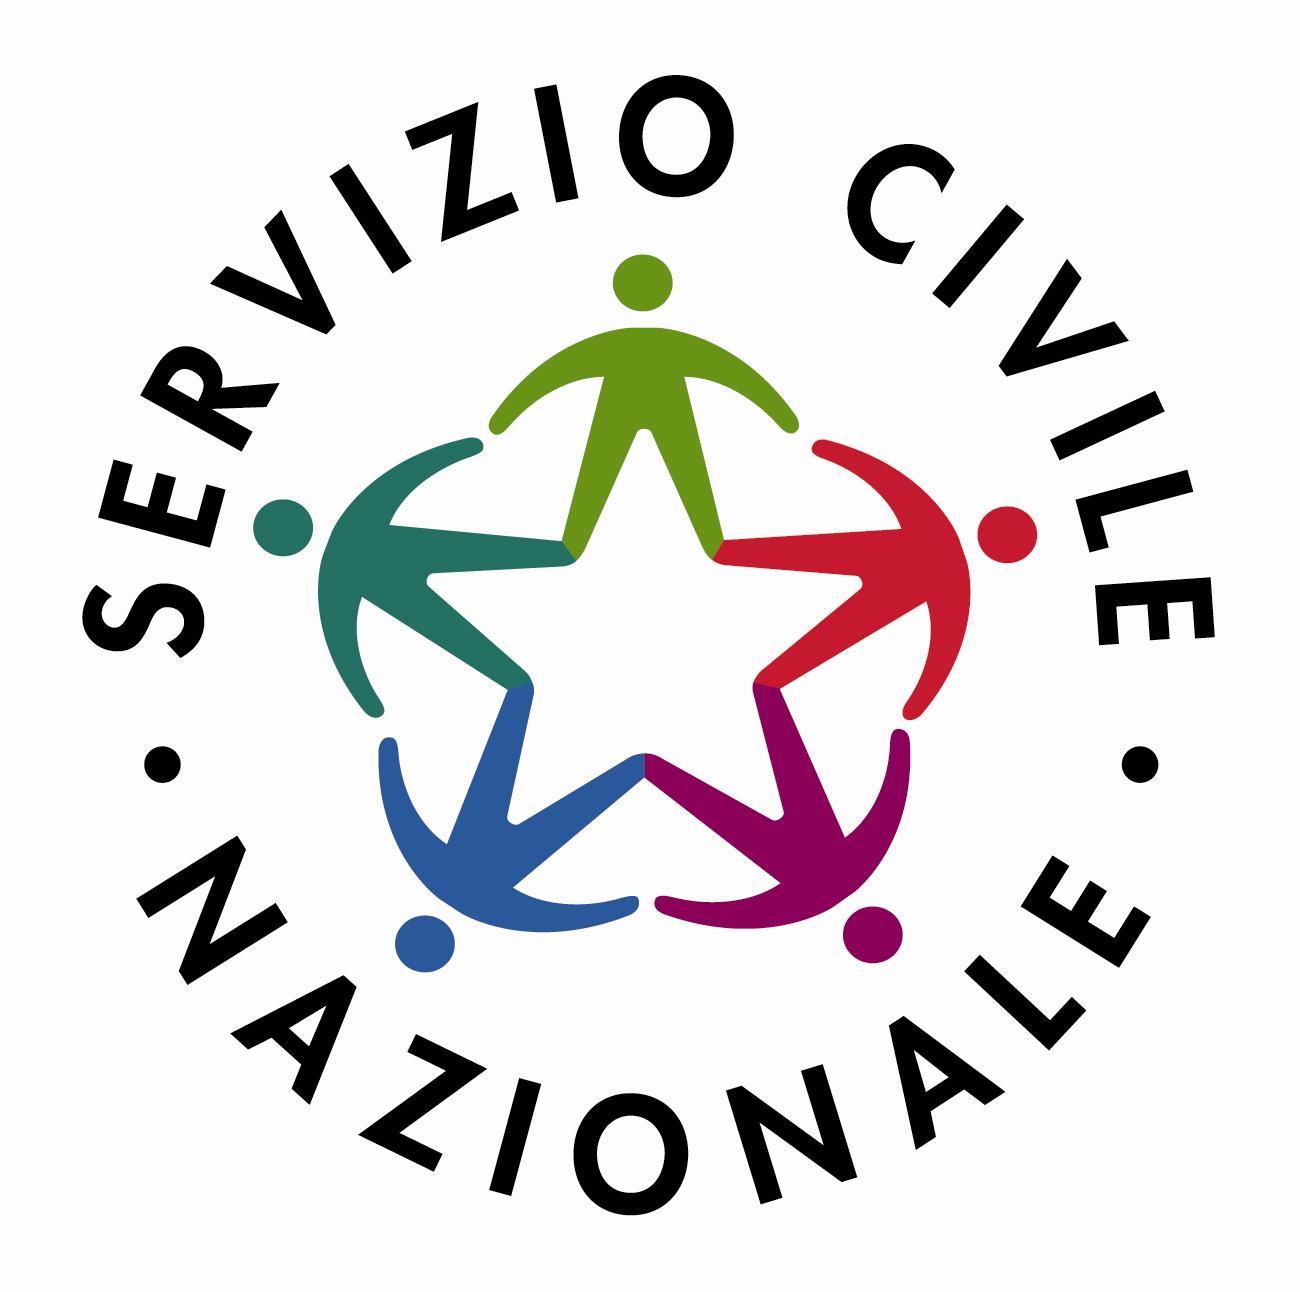 48 posti retribuiti per un anno per ragazzi e ragazze per Servizio Civile in associazioni a Pavia e provincia